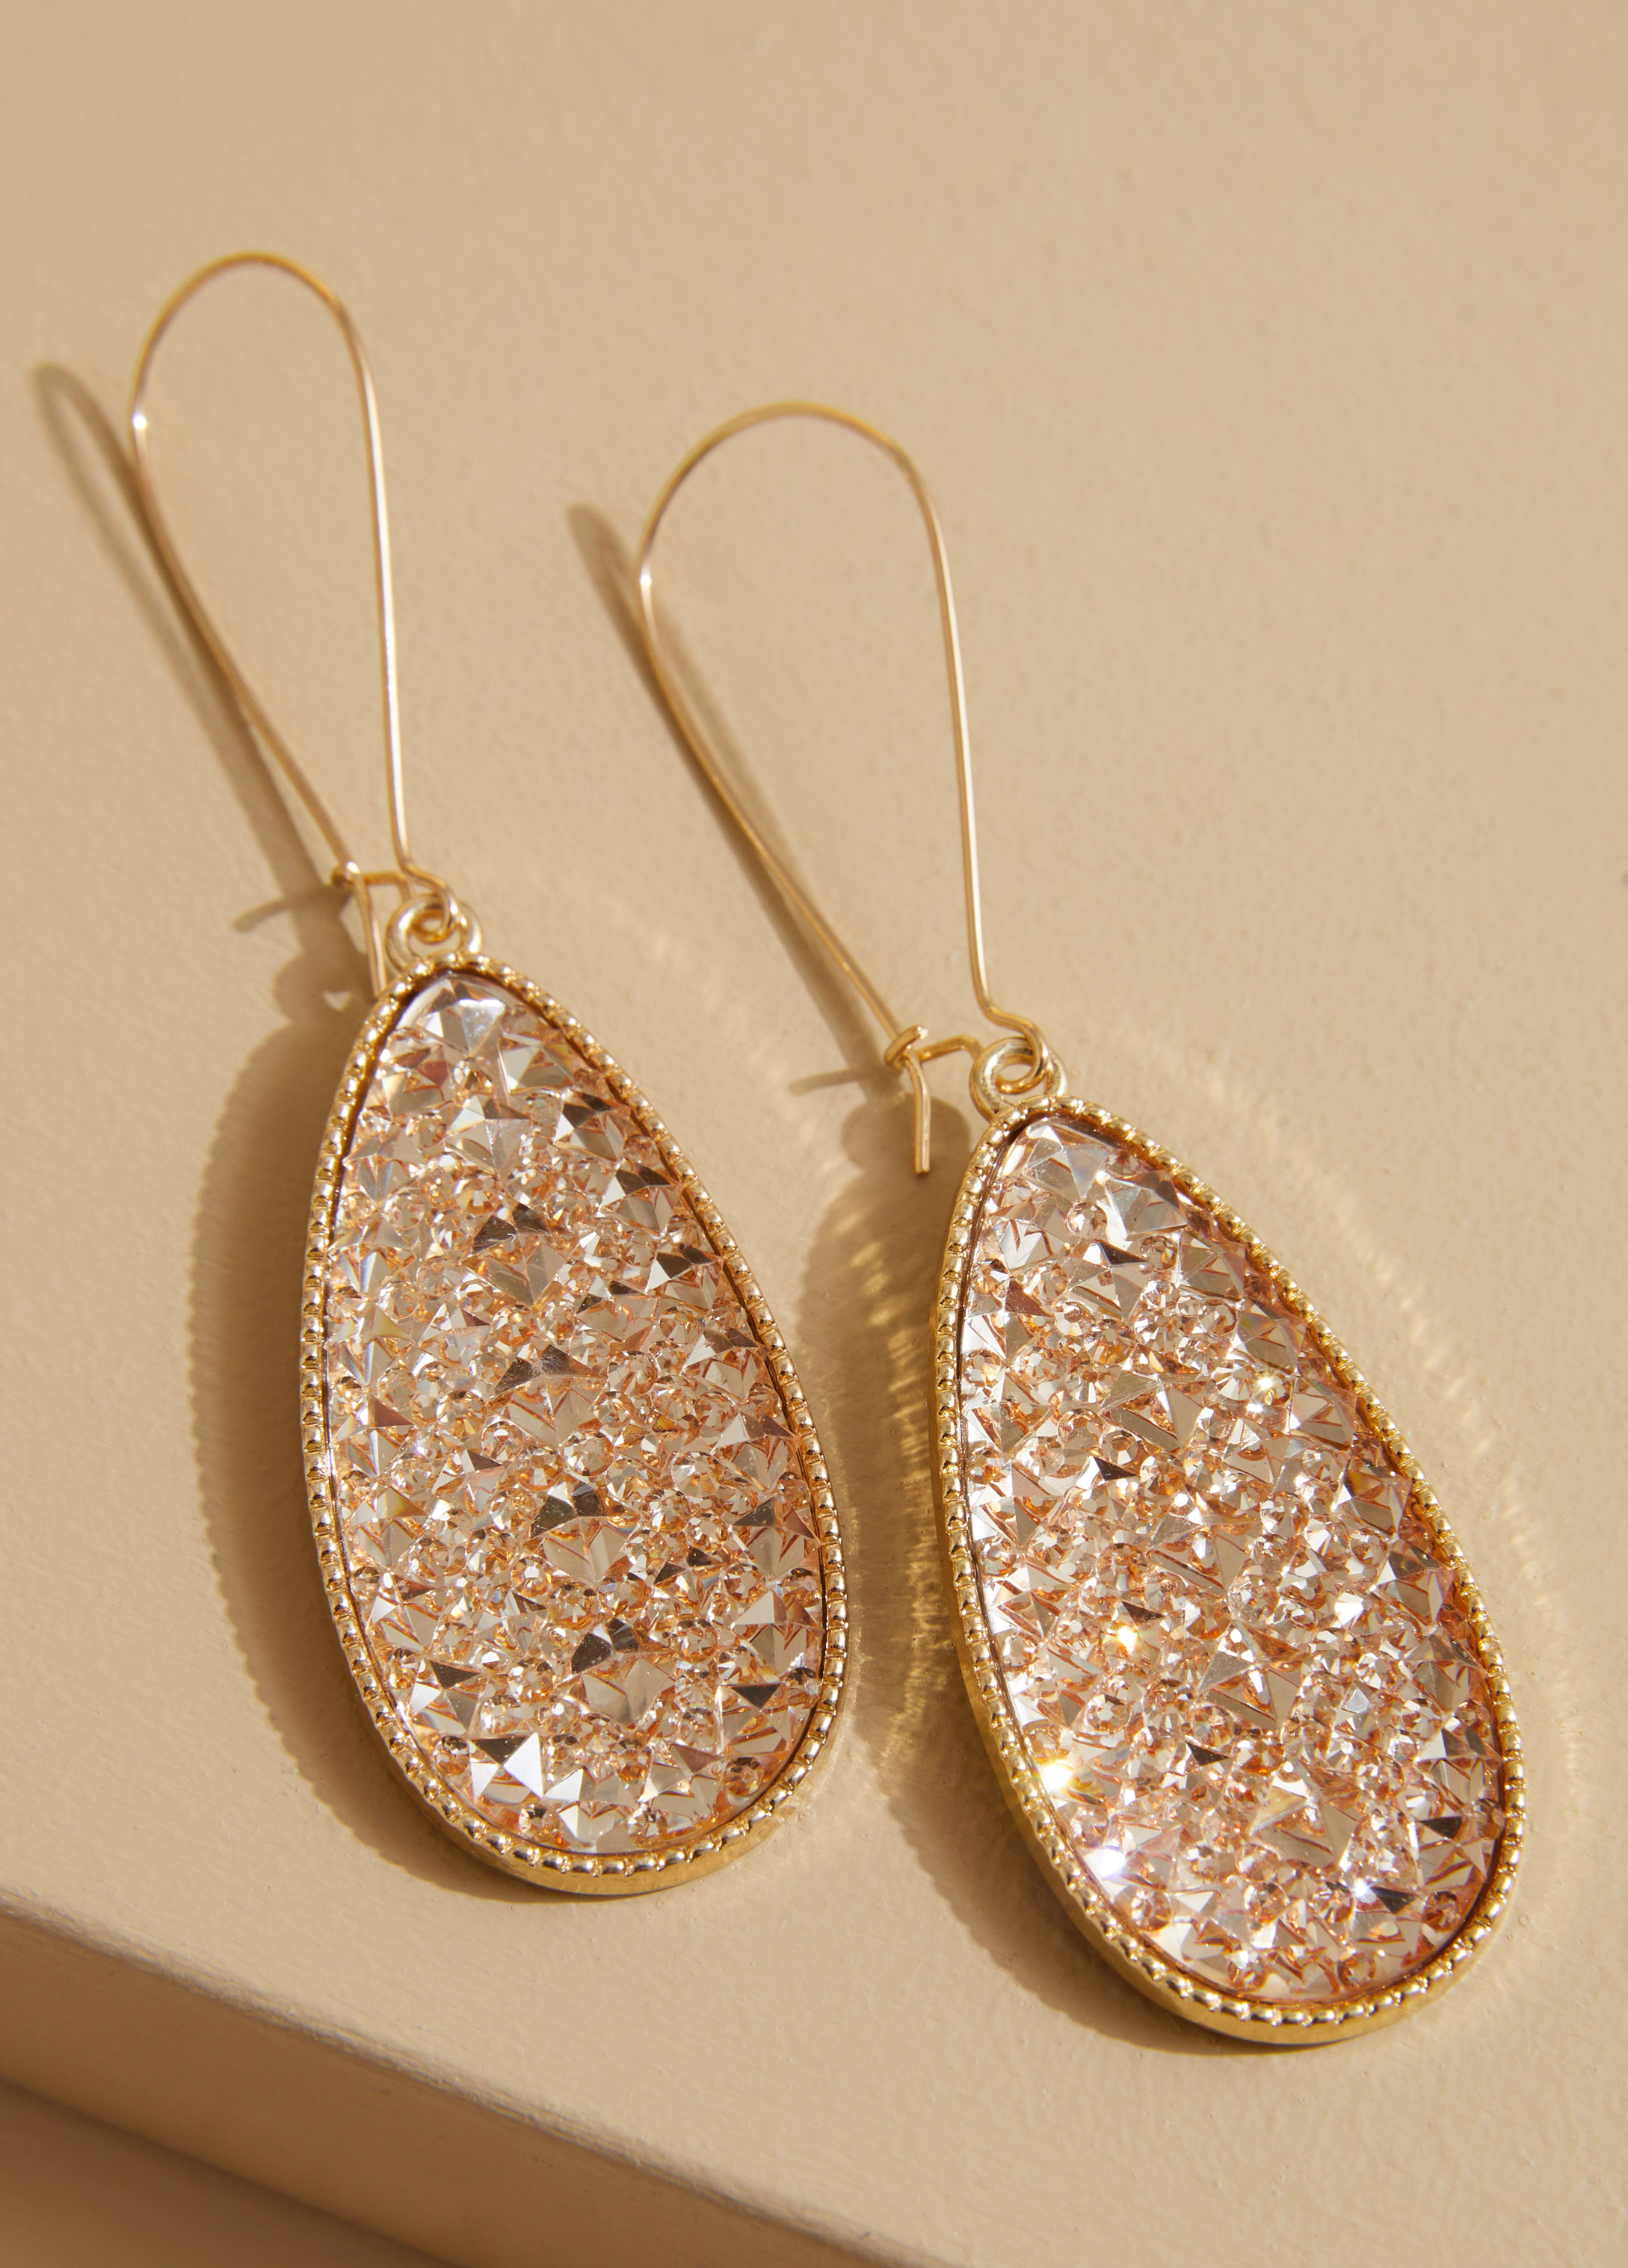 Statement jewelry gold druzy earrings costume jewelry Fashion Jewelry